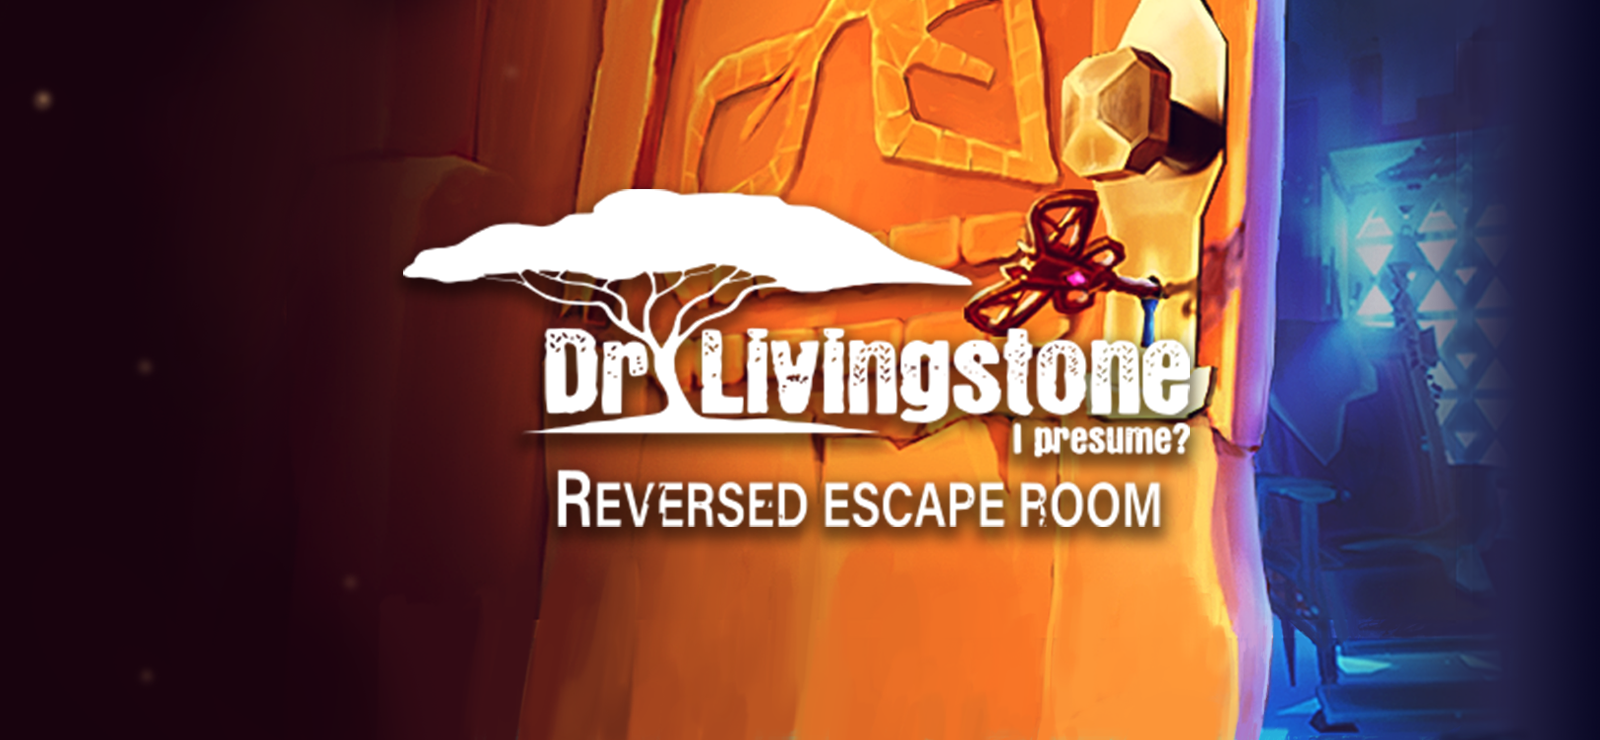 Dr Livingstone, I Presume? - Reversed Escape Room